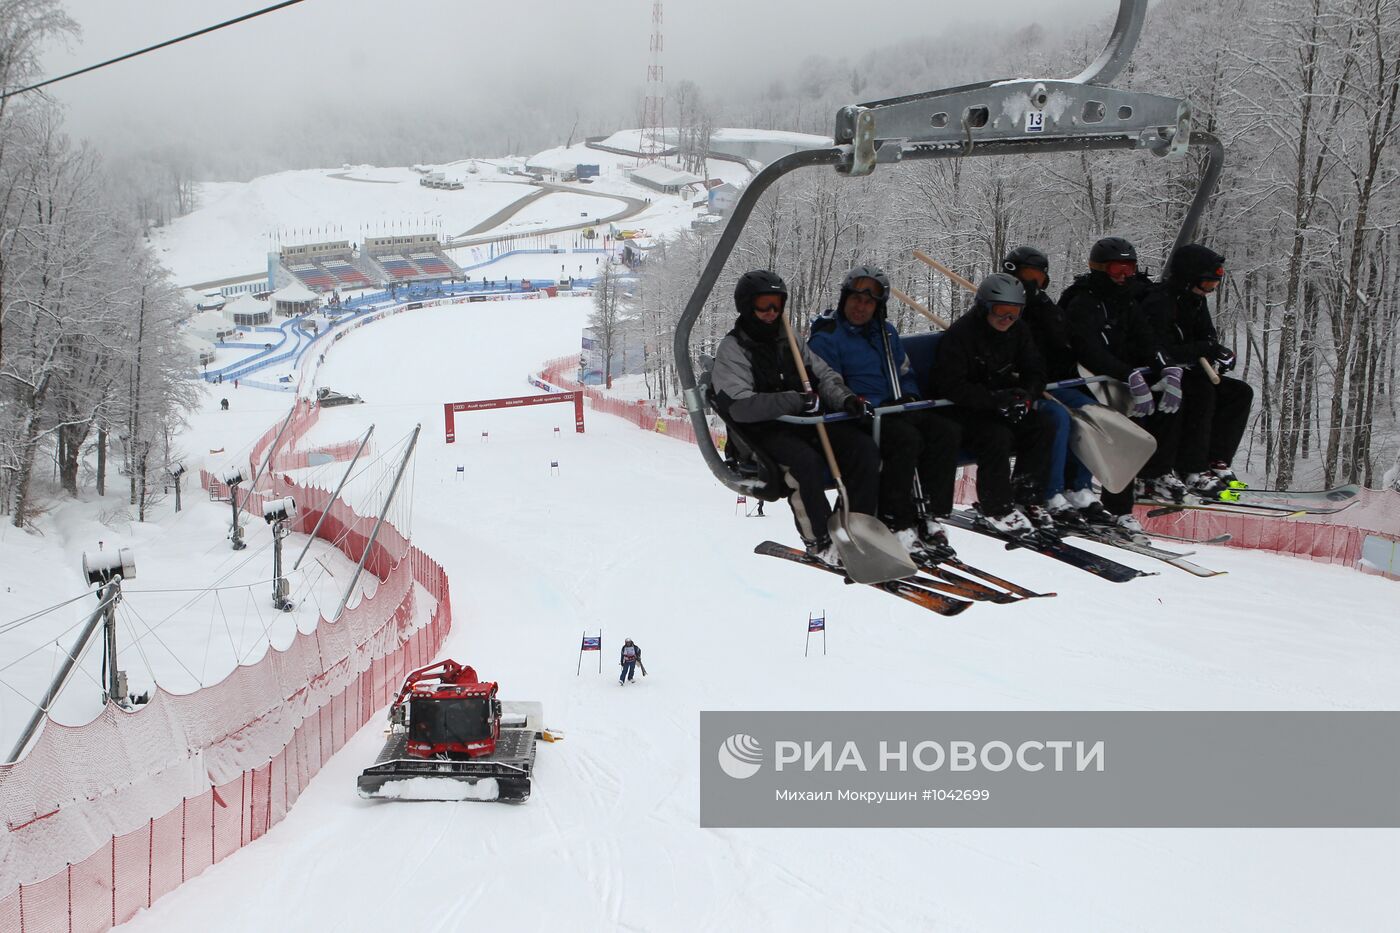 Отмена соревнований этапа Кубка мира 2012 по горнолыжному спорту